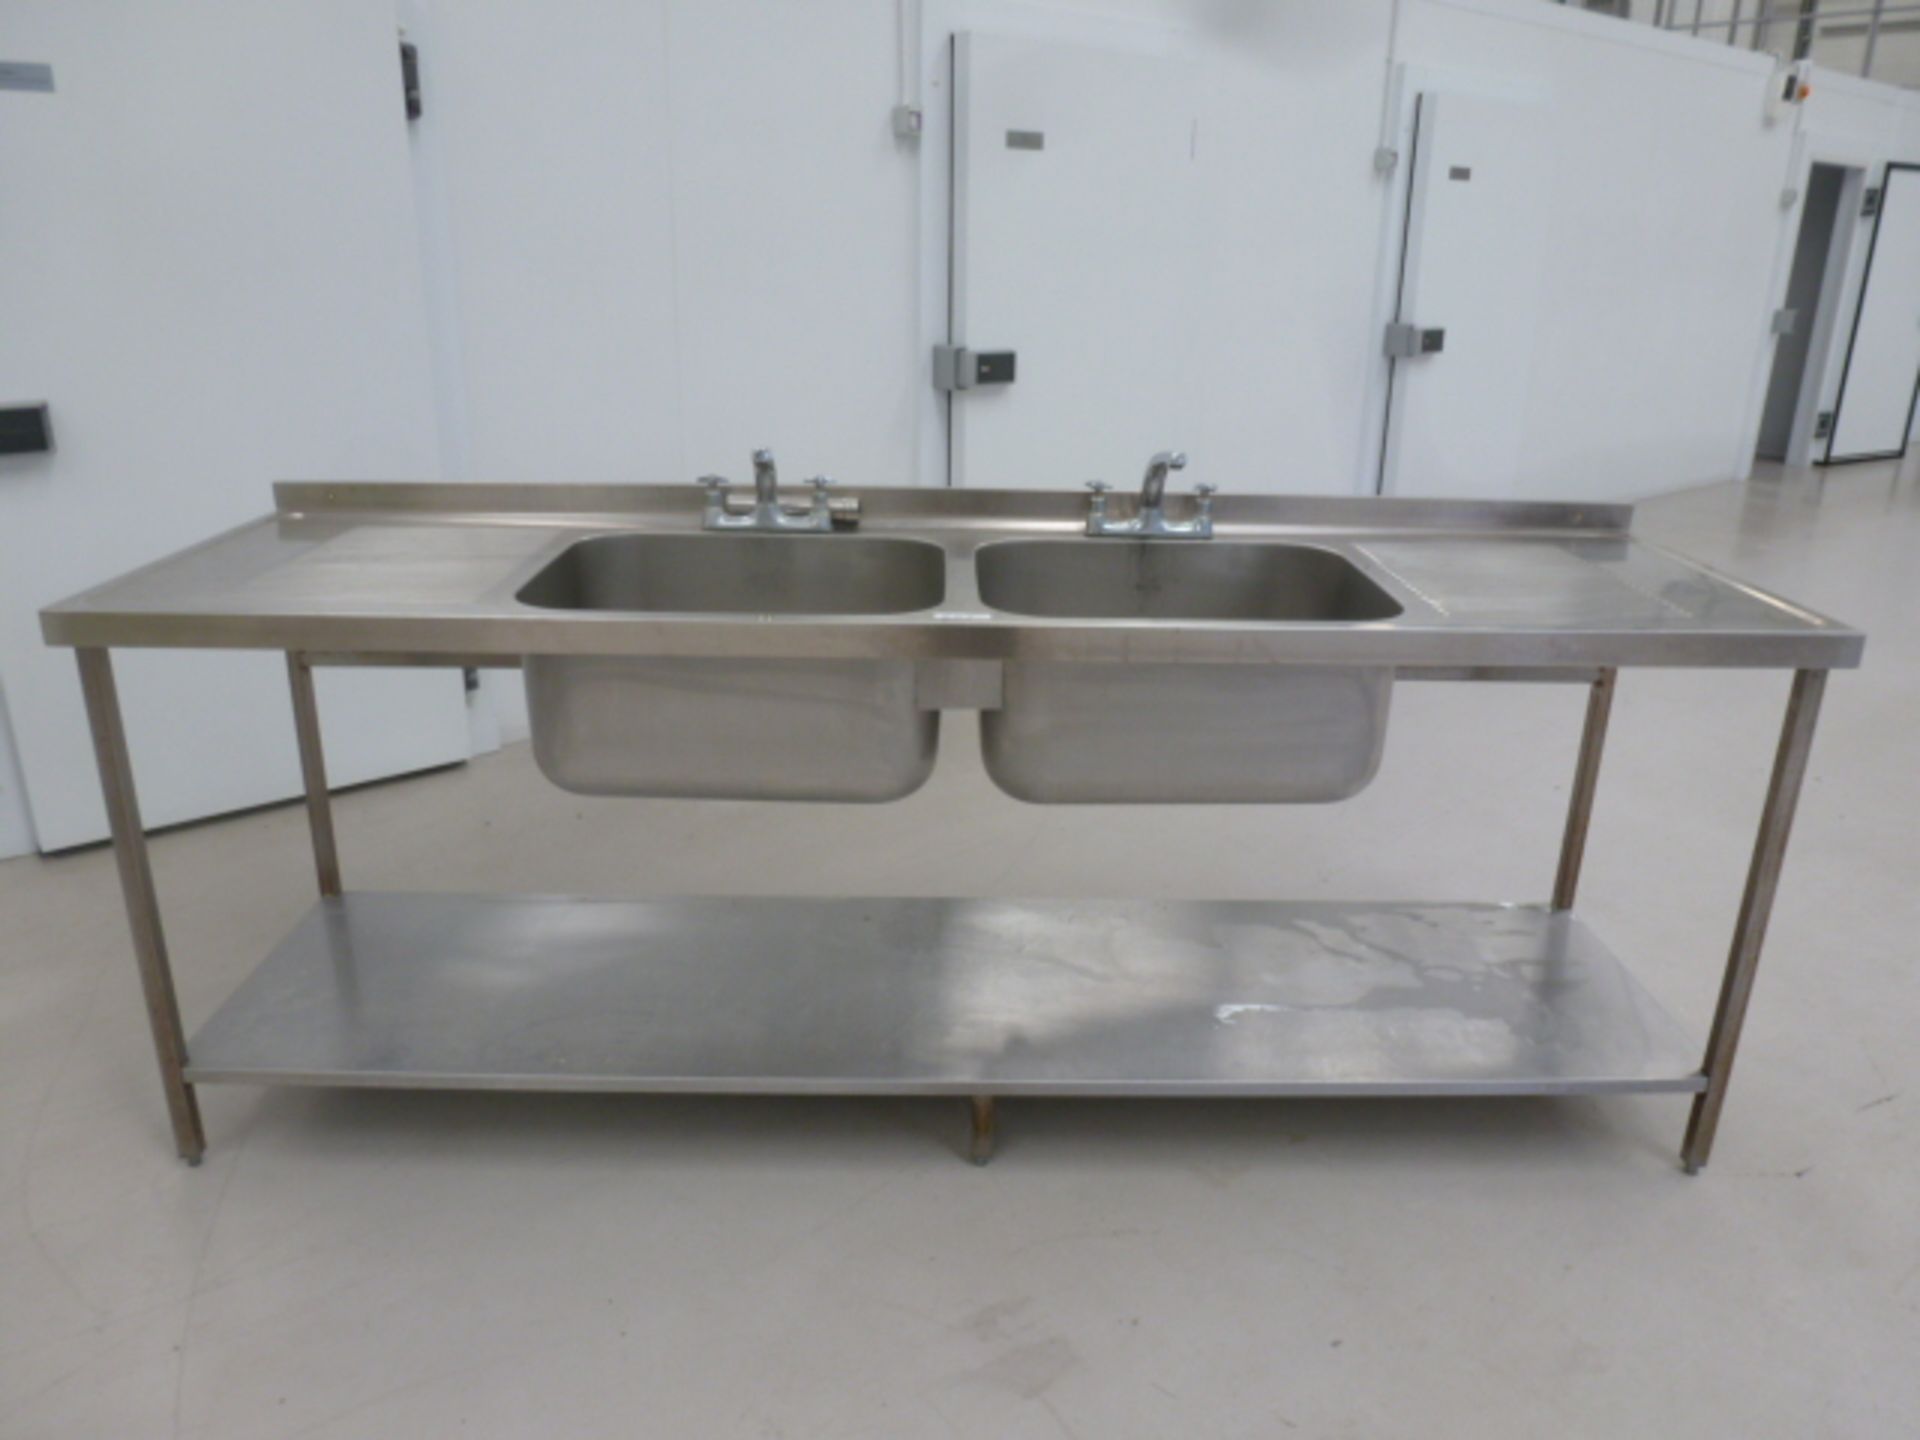 Parry Double Tap & Sink Unit with Double Drainer. Size (L) 150cm x (D) 60cm x (H) 90cm.